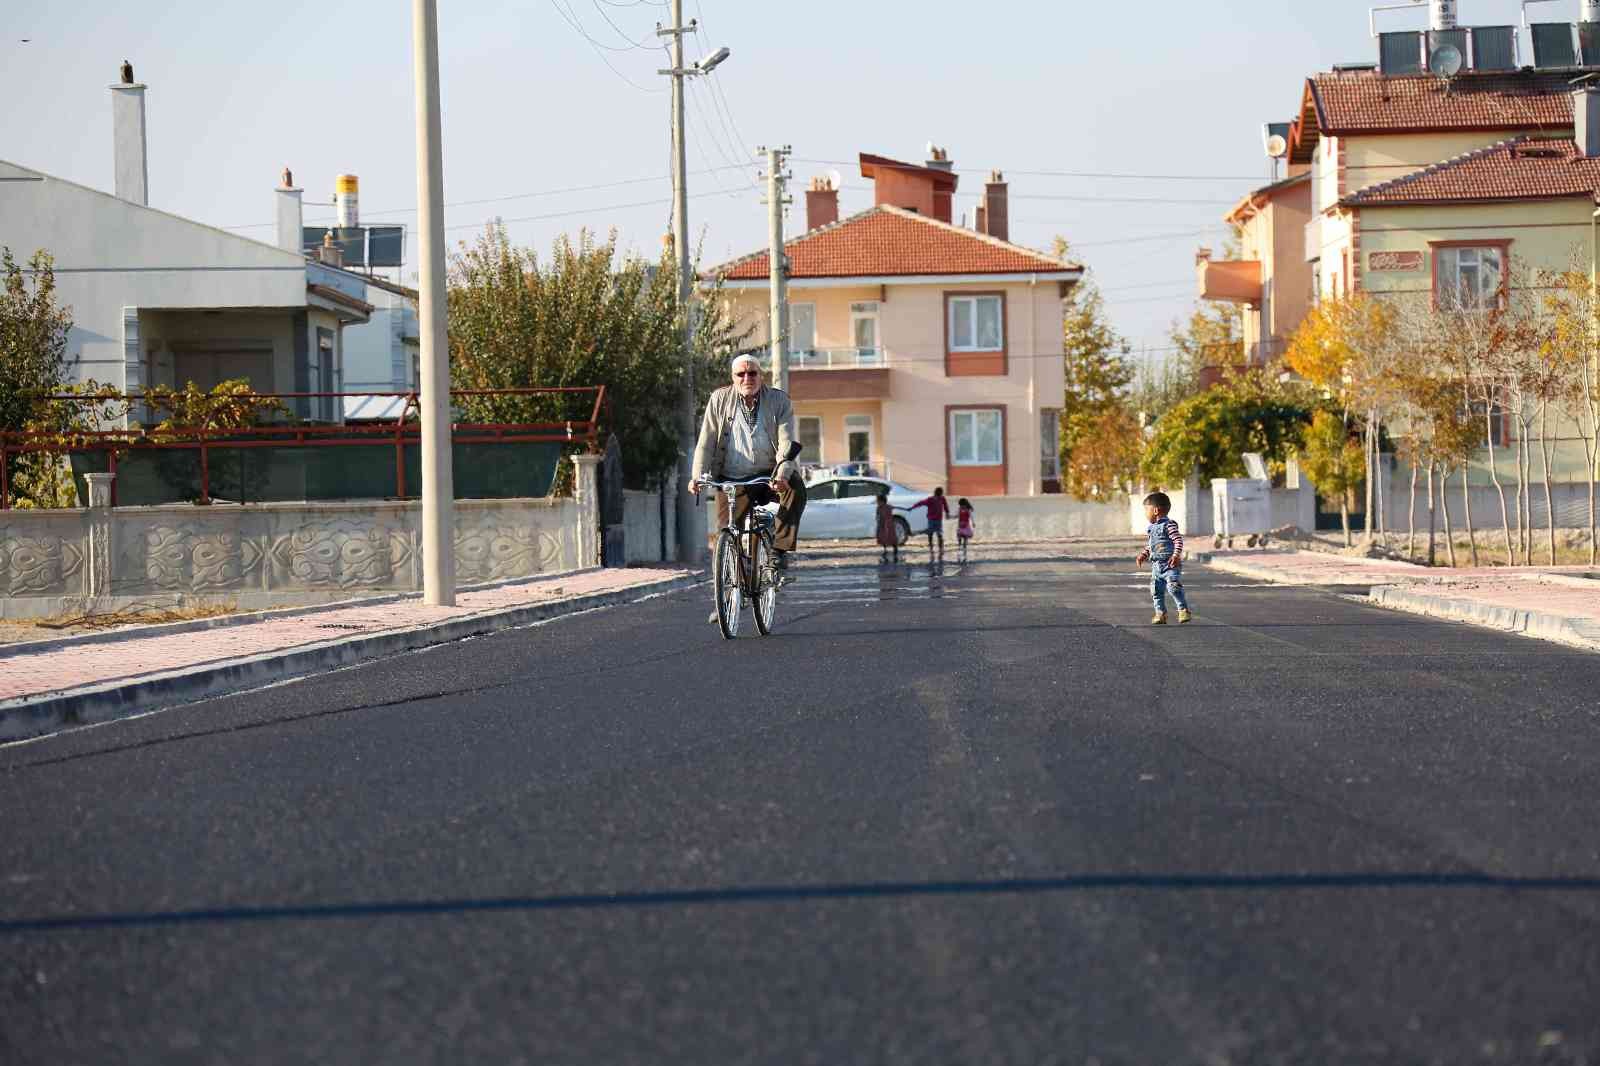 Meram Belediyesi Alakova’da sokakları sıcak asfaltla buluşturdu #konya